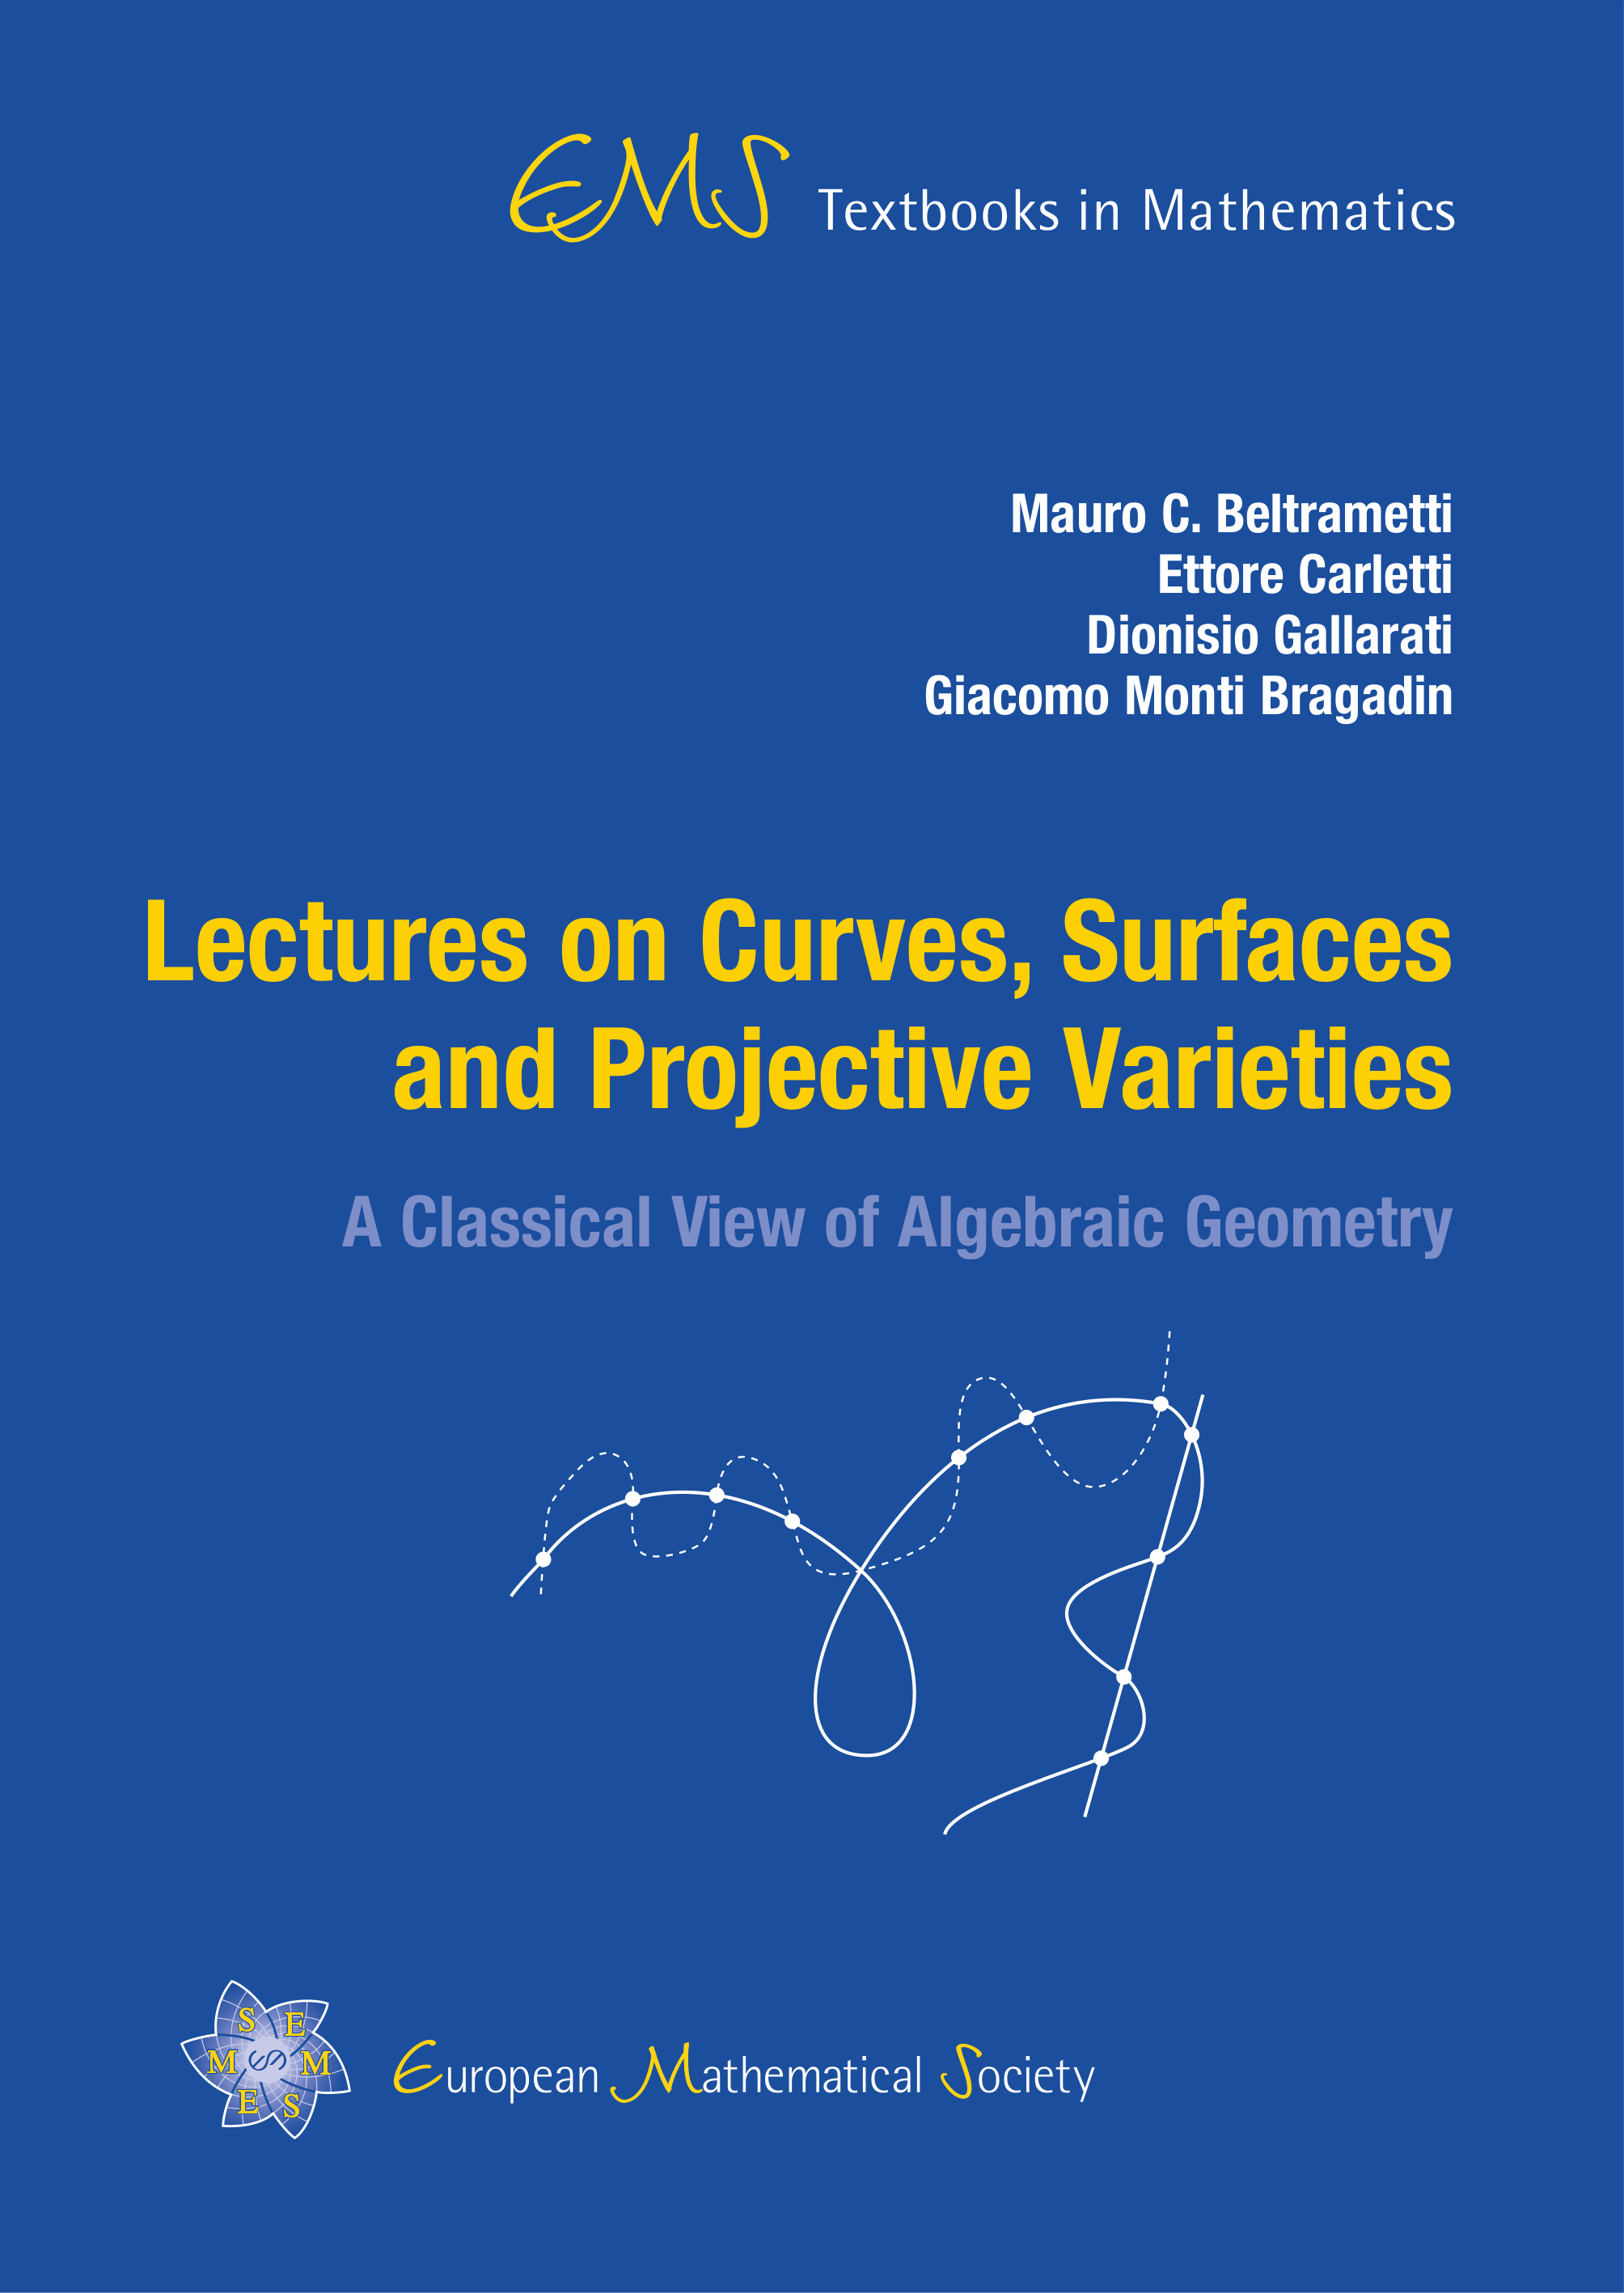 Geometric Properties of Algebraic Varieties cover